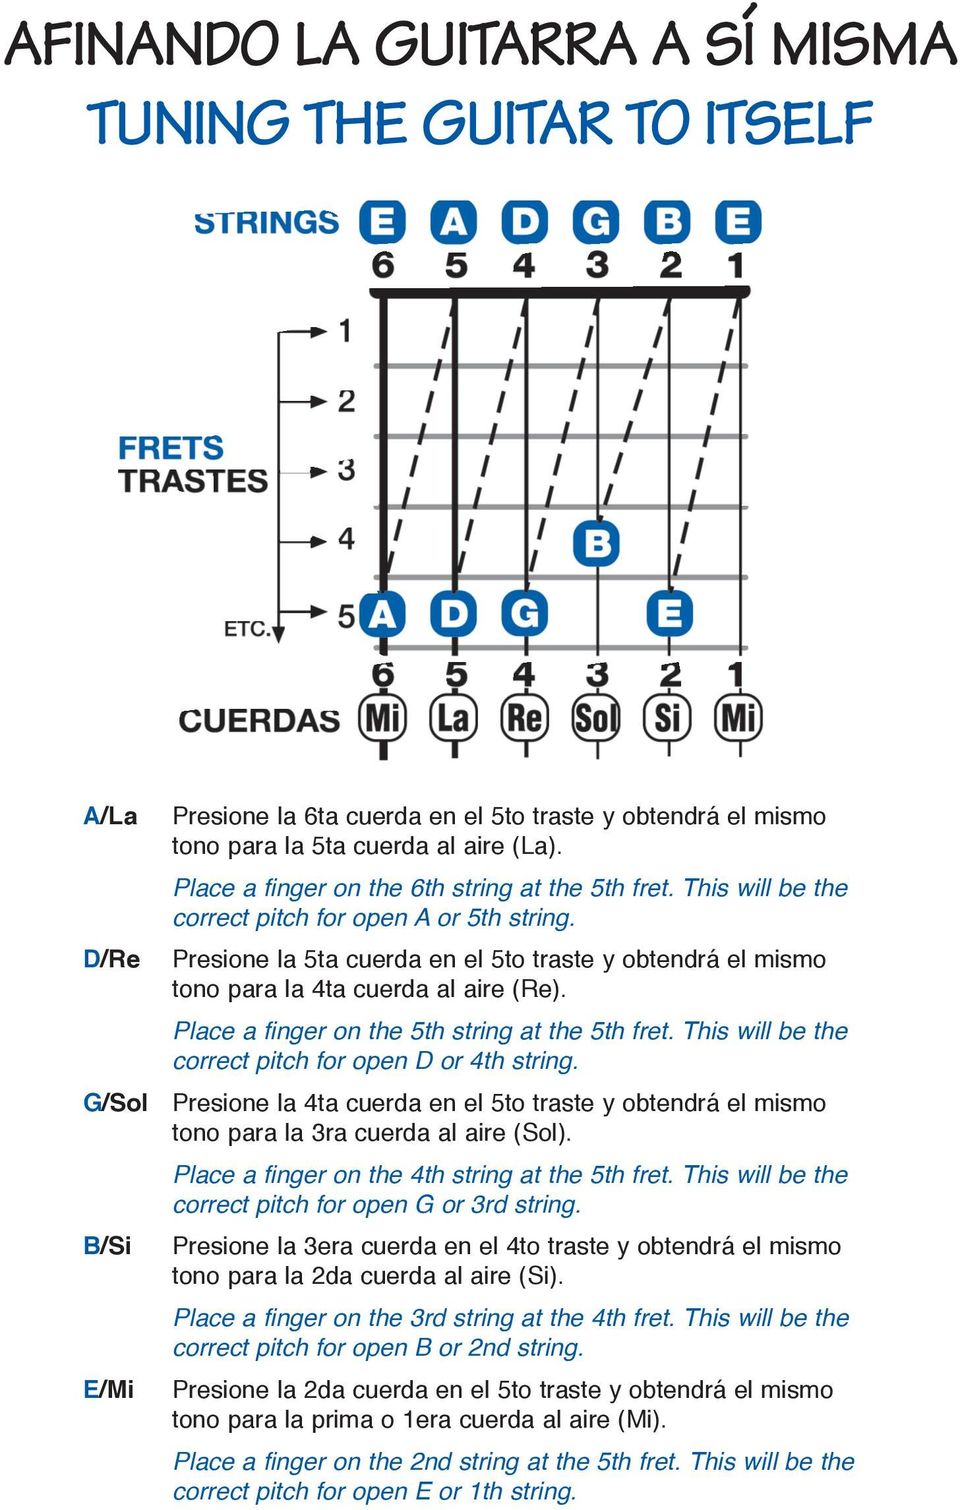 Presione la 5ta cuerda en el 5to traste y obtendrá el mismo tono para la 4ta cuerda al aire (Re). Place a finger on the 5th string at the 5th fret.